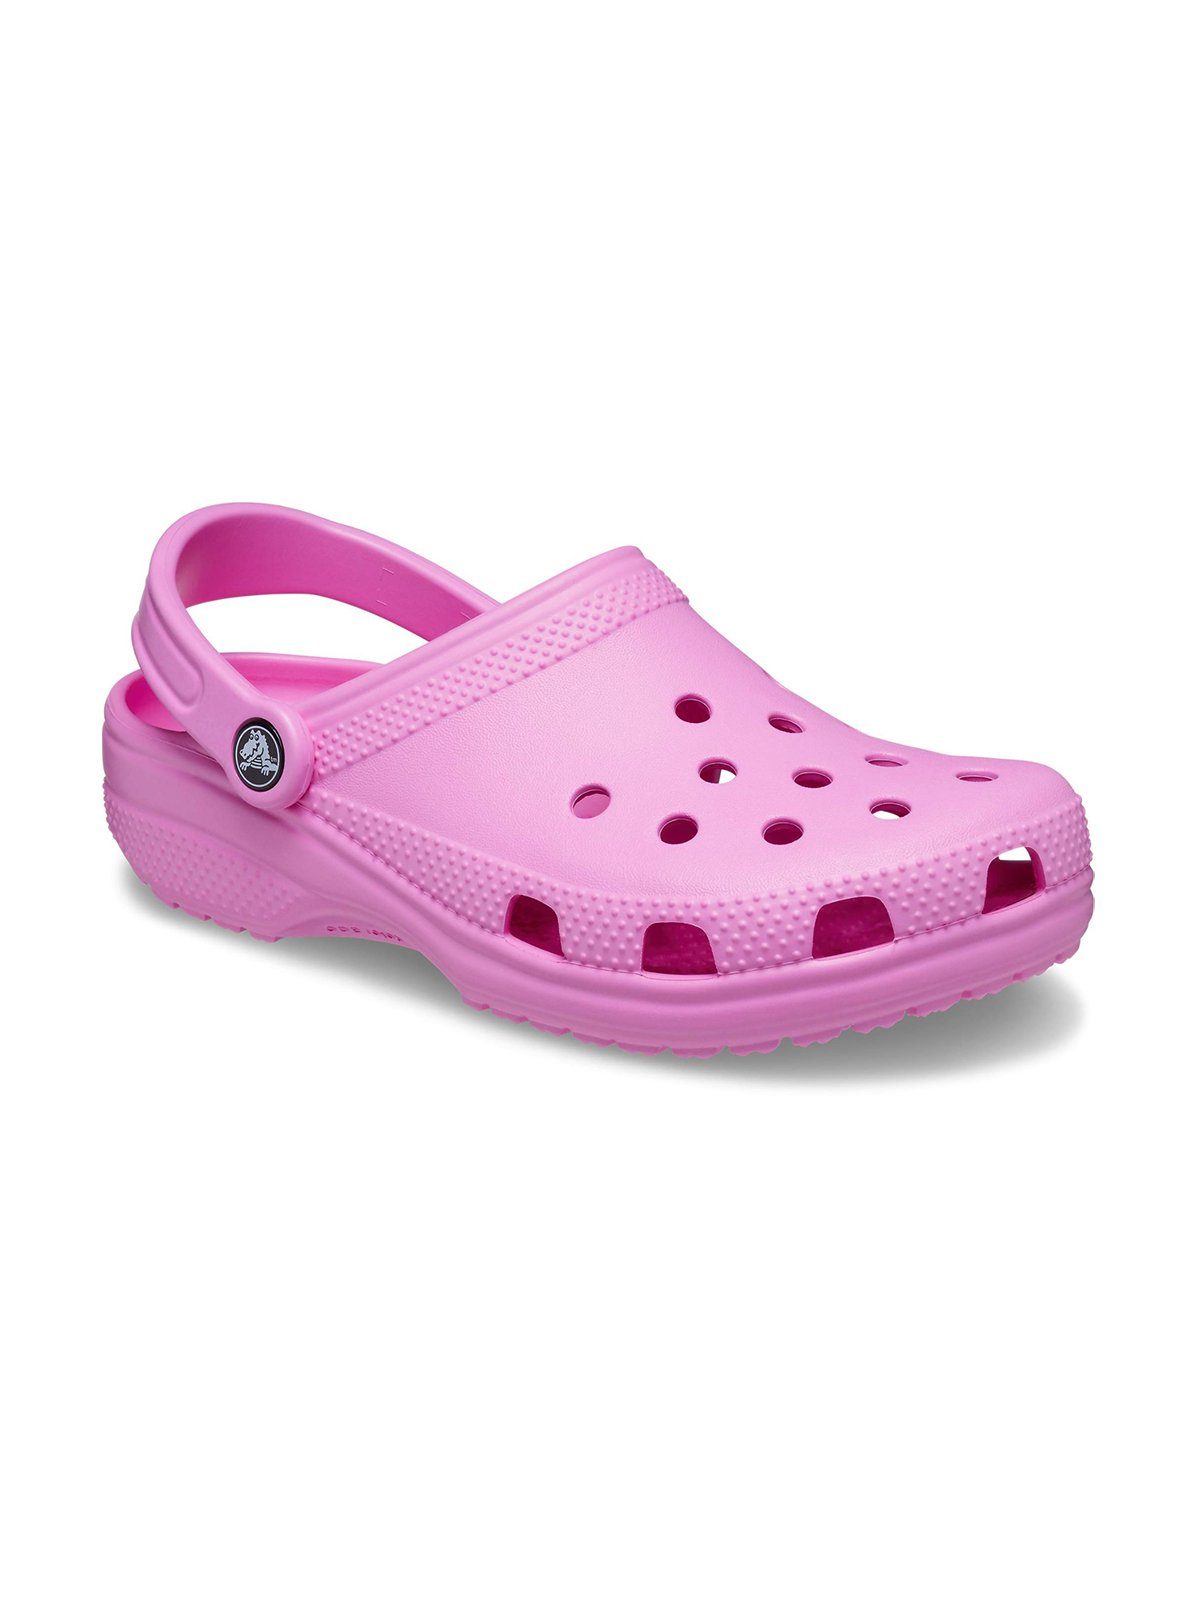 Crocs Crocs Classic taffy Clog pink Clog